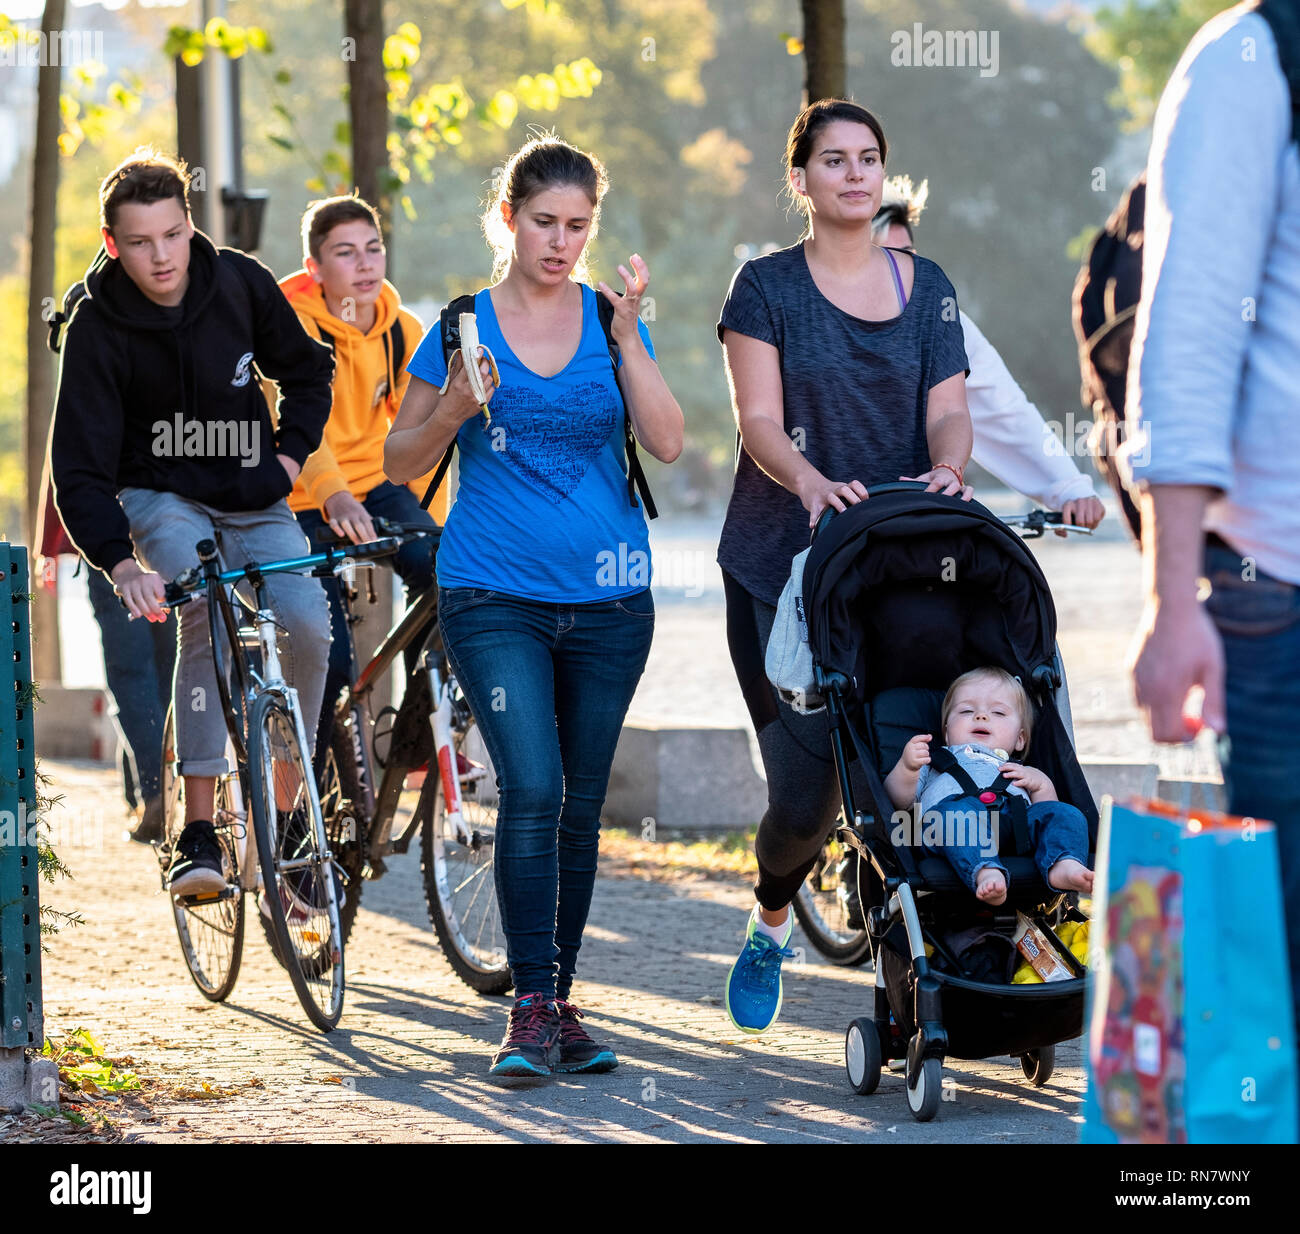 Straßburg, Elsass, Frankreich, Frauen zu Fuß auf Bürgersteig, Kinderwagen und jugendliche Jungen Radfahren auf Pflaster, Stockfoto